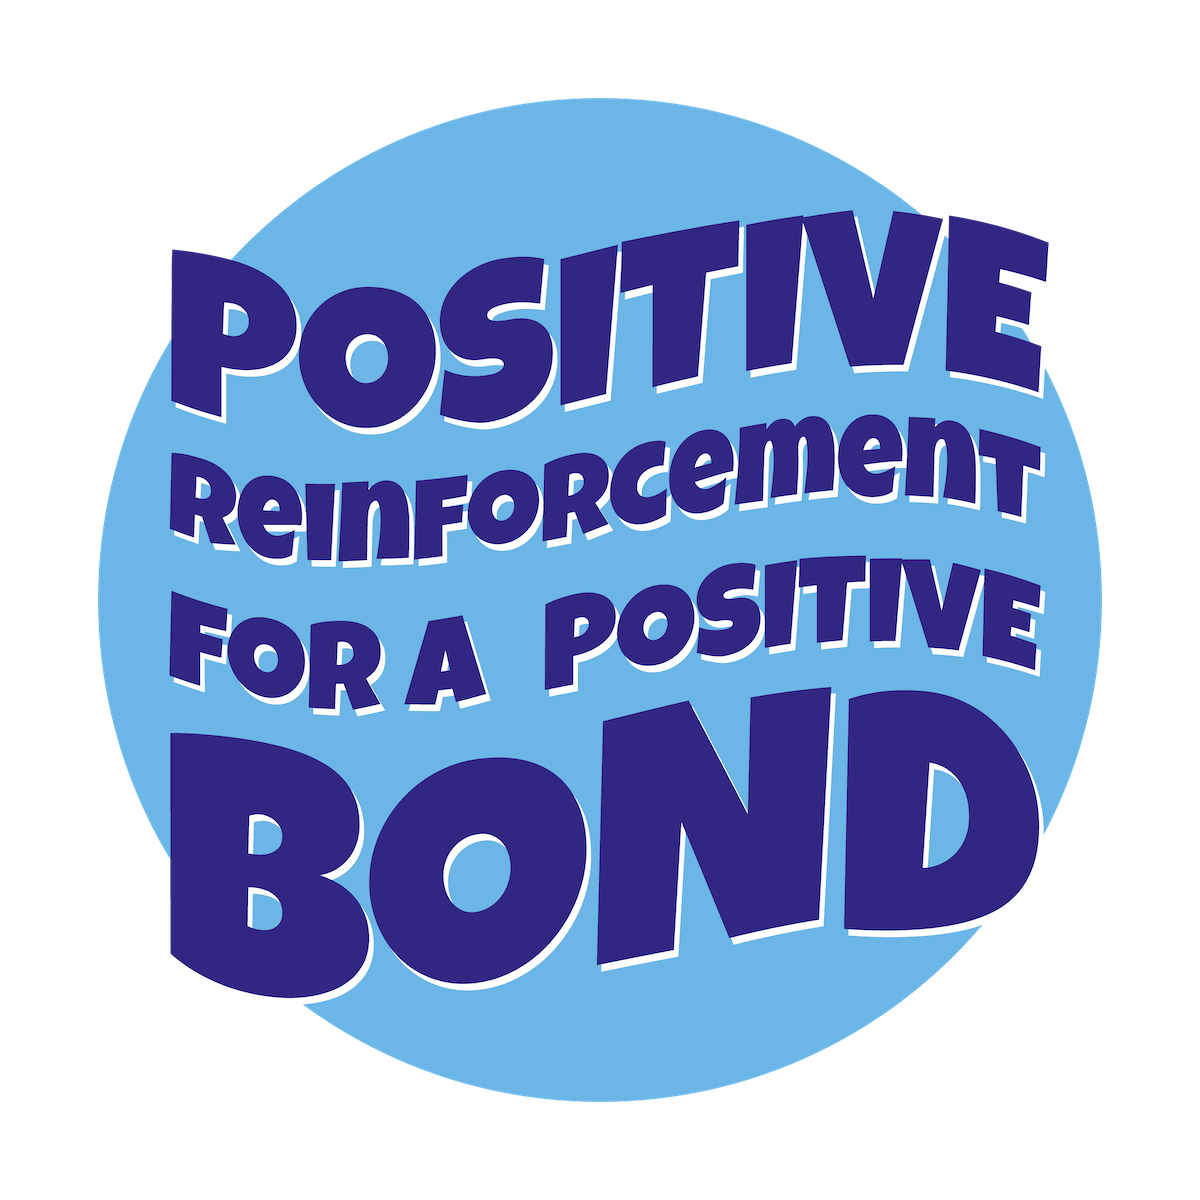 Positive Reinforcement for a positive bond